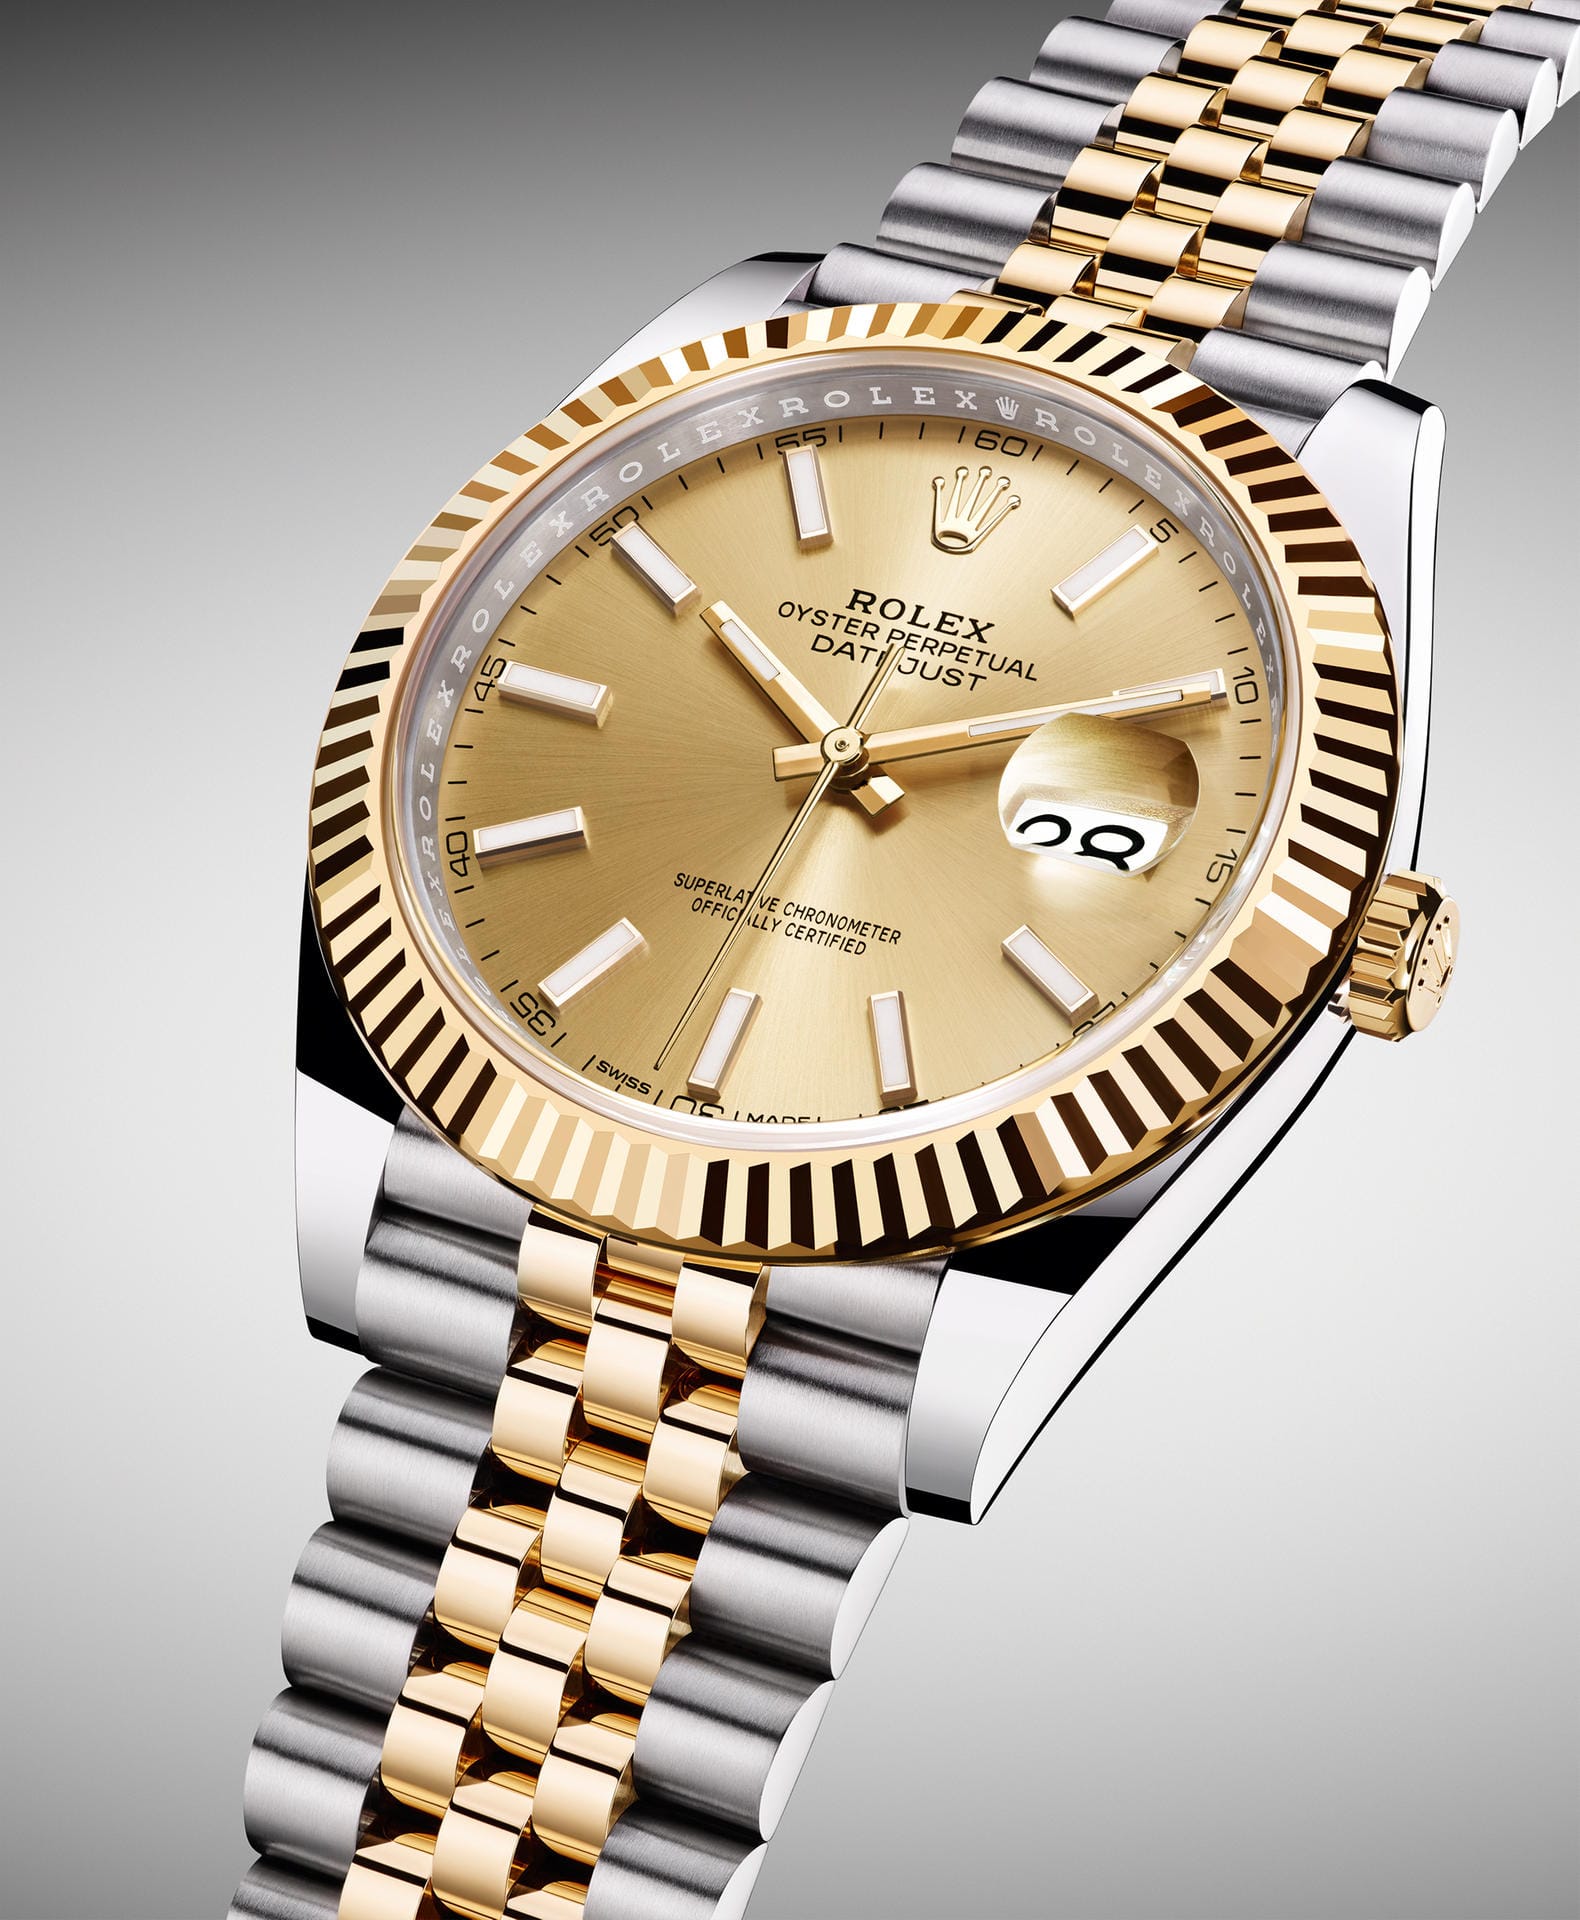 Bronze geht an die Rolex Datejust, den Inbegriff der klassischen Armbanduhr – so der Hersteller. Ab 9950 Euro.